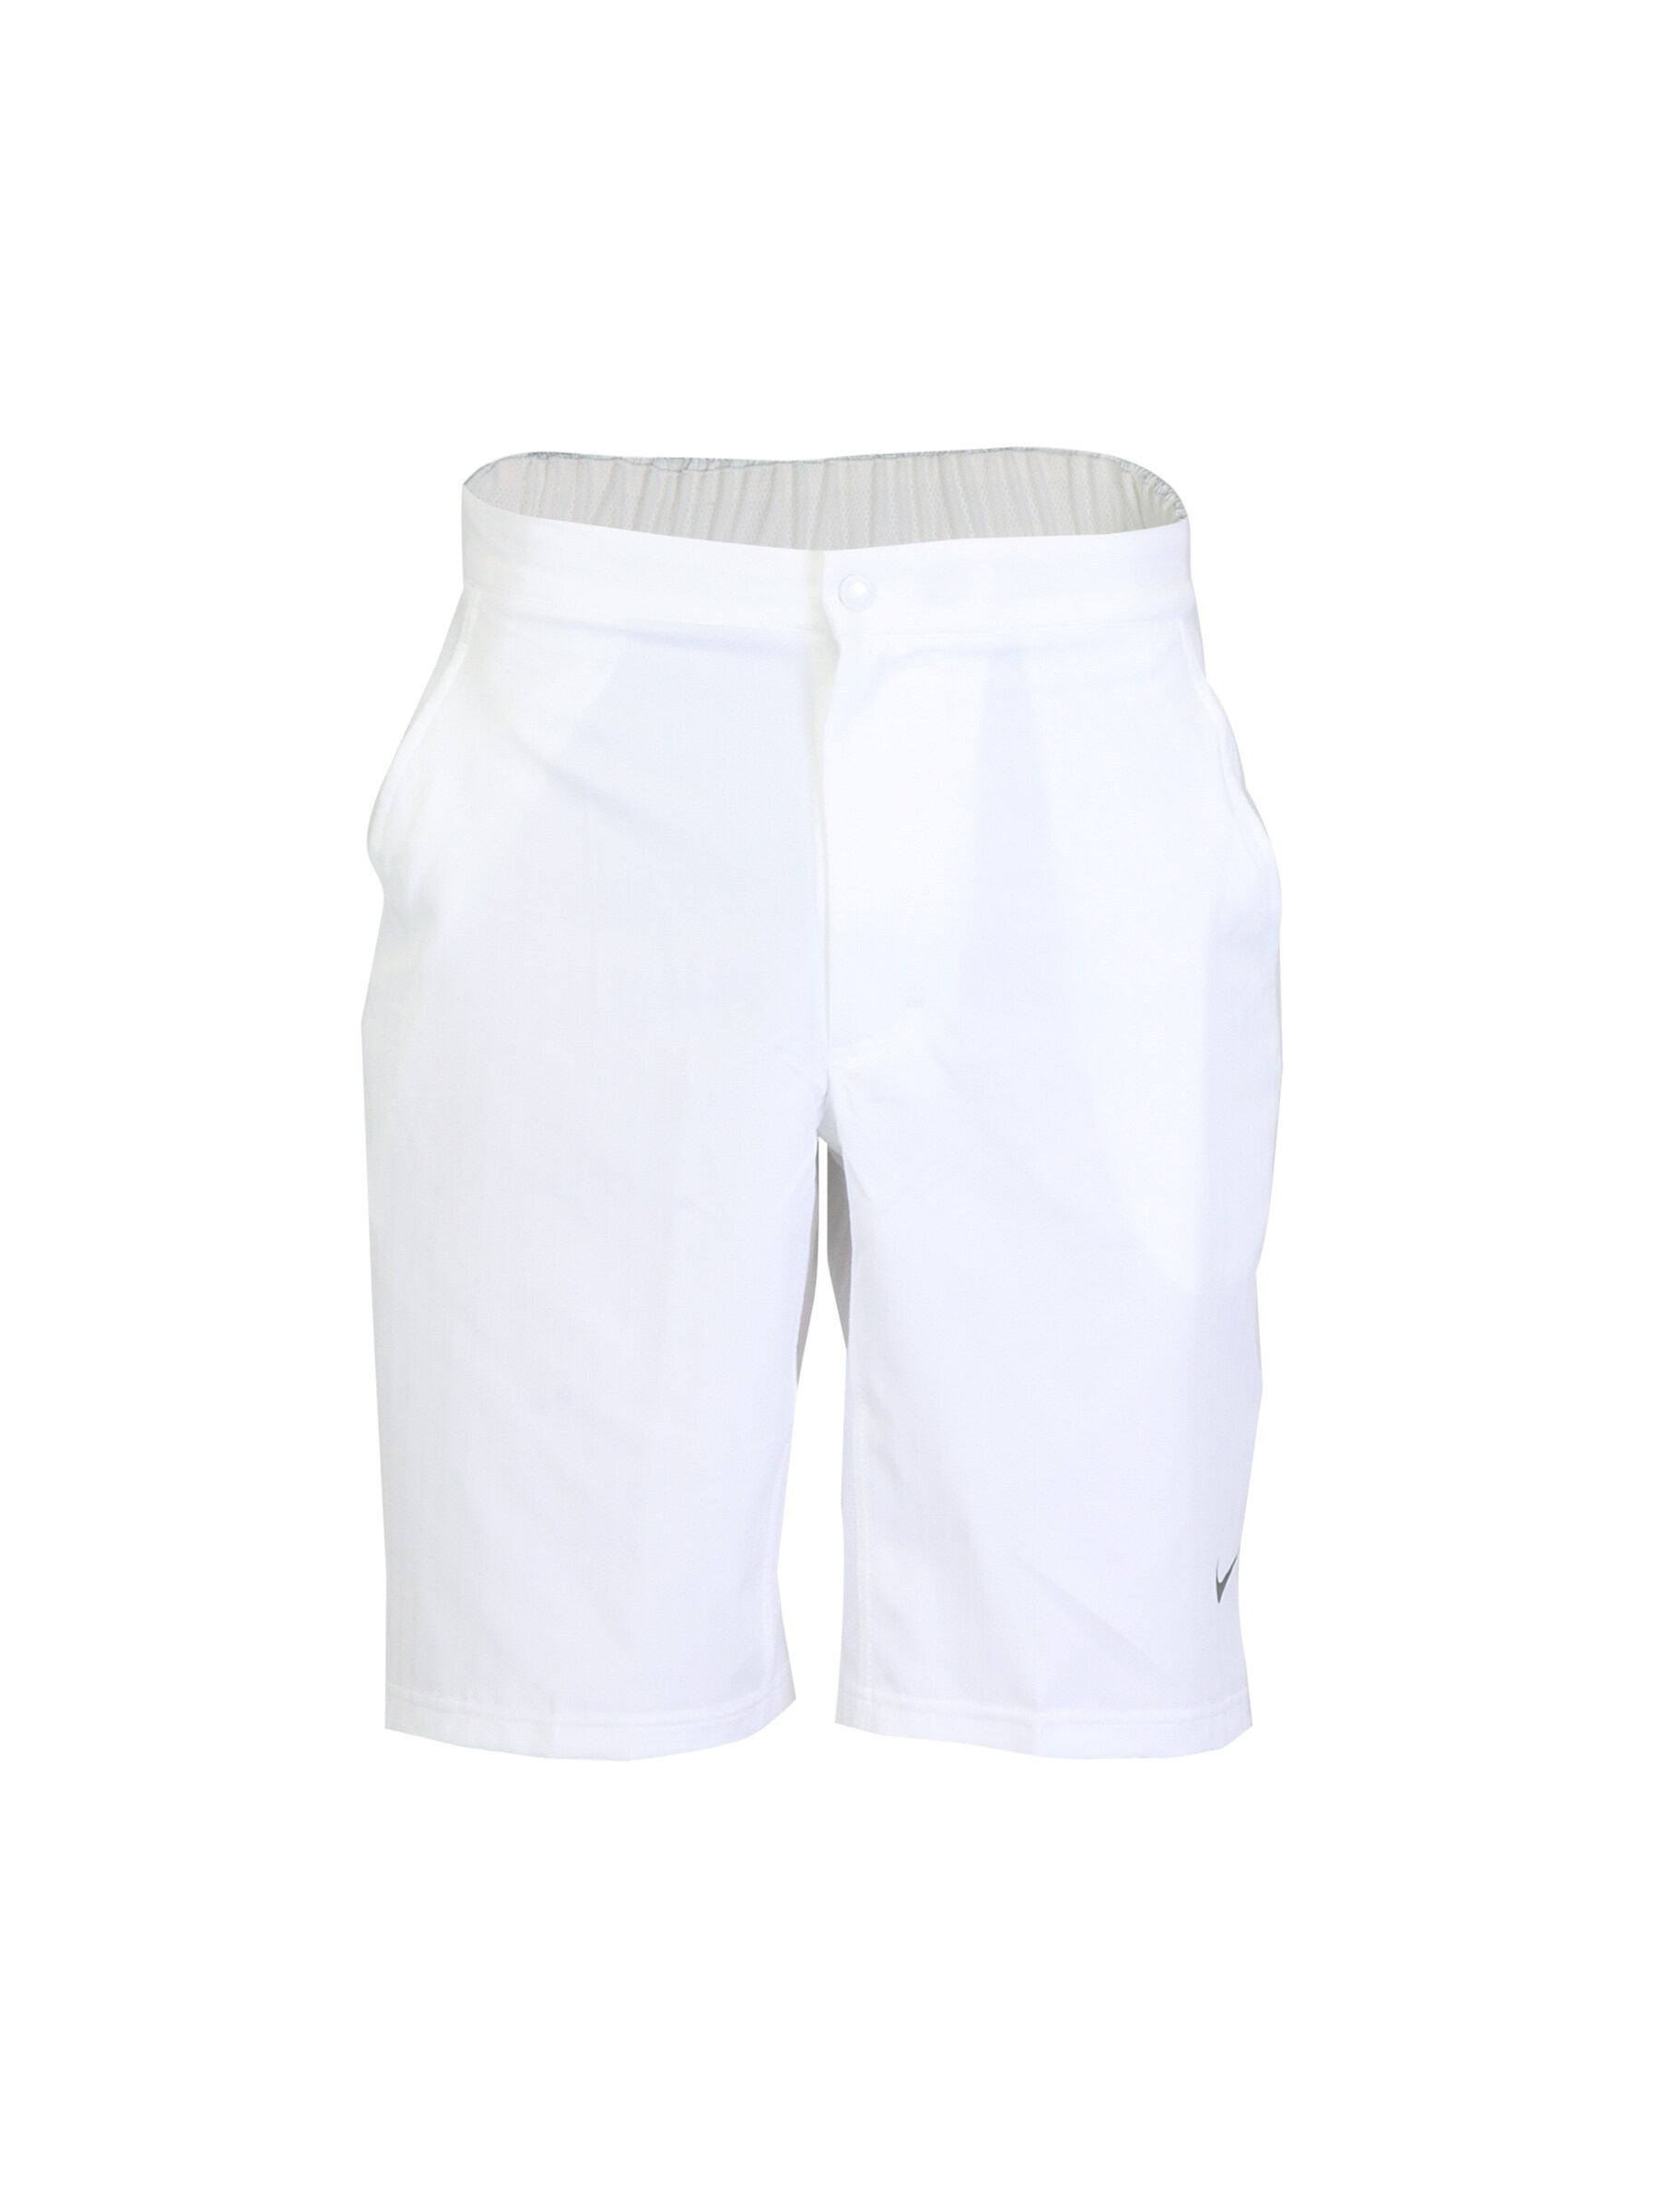 Nike Men Tennis White Shorts